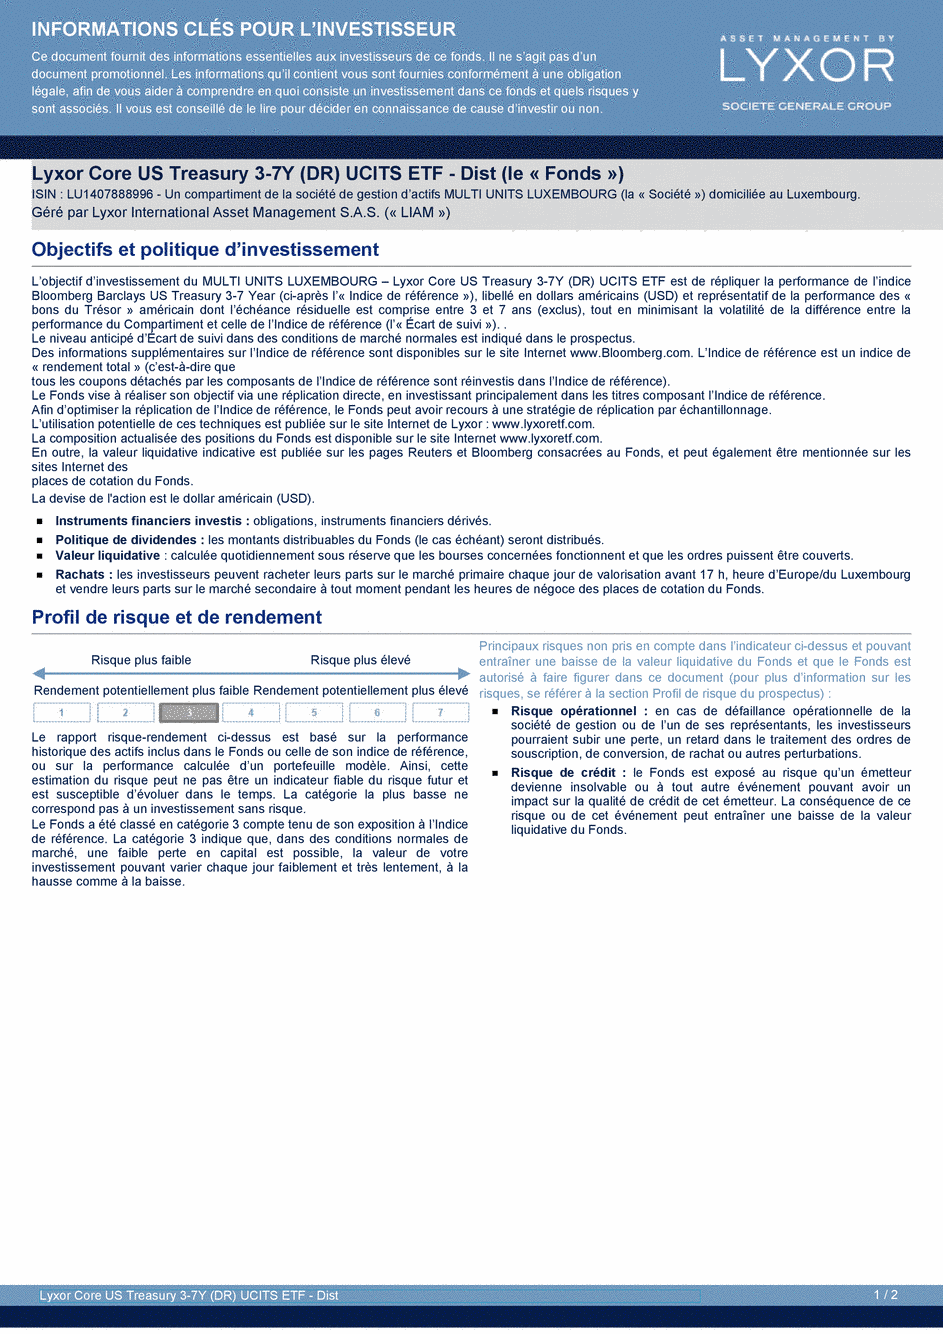 DICI Lyxor Core US Treasury 3-7Y (DR) UCITS ETF - Dist - 20/04/2020 - Français